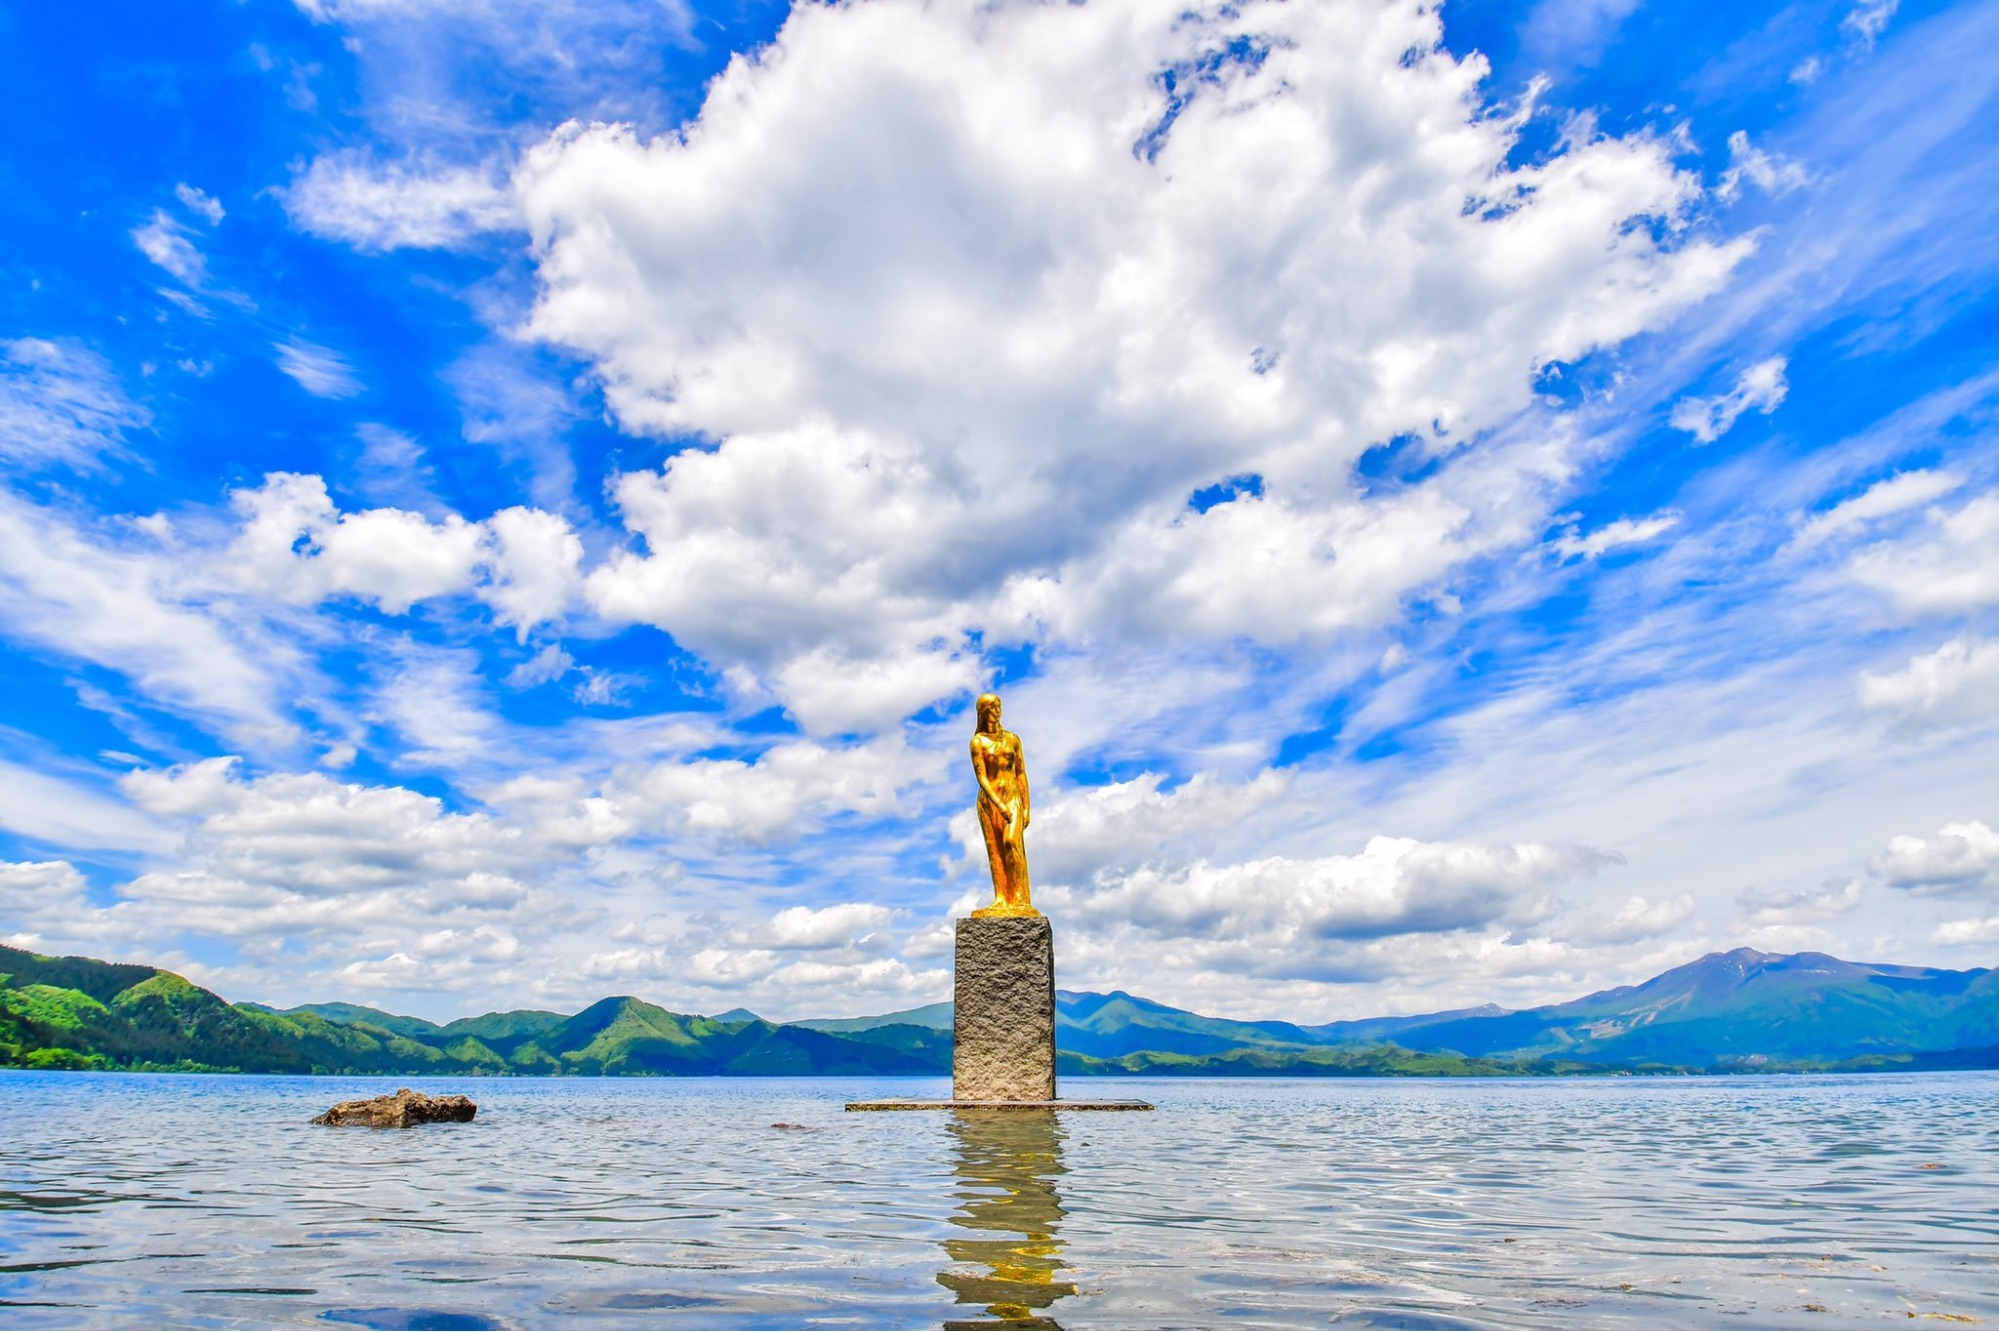 lakes in japan - statue of tatsuko